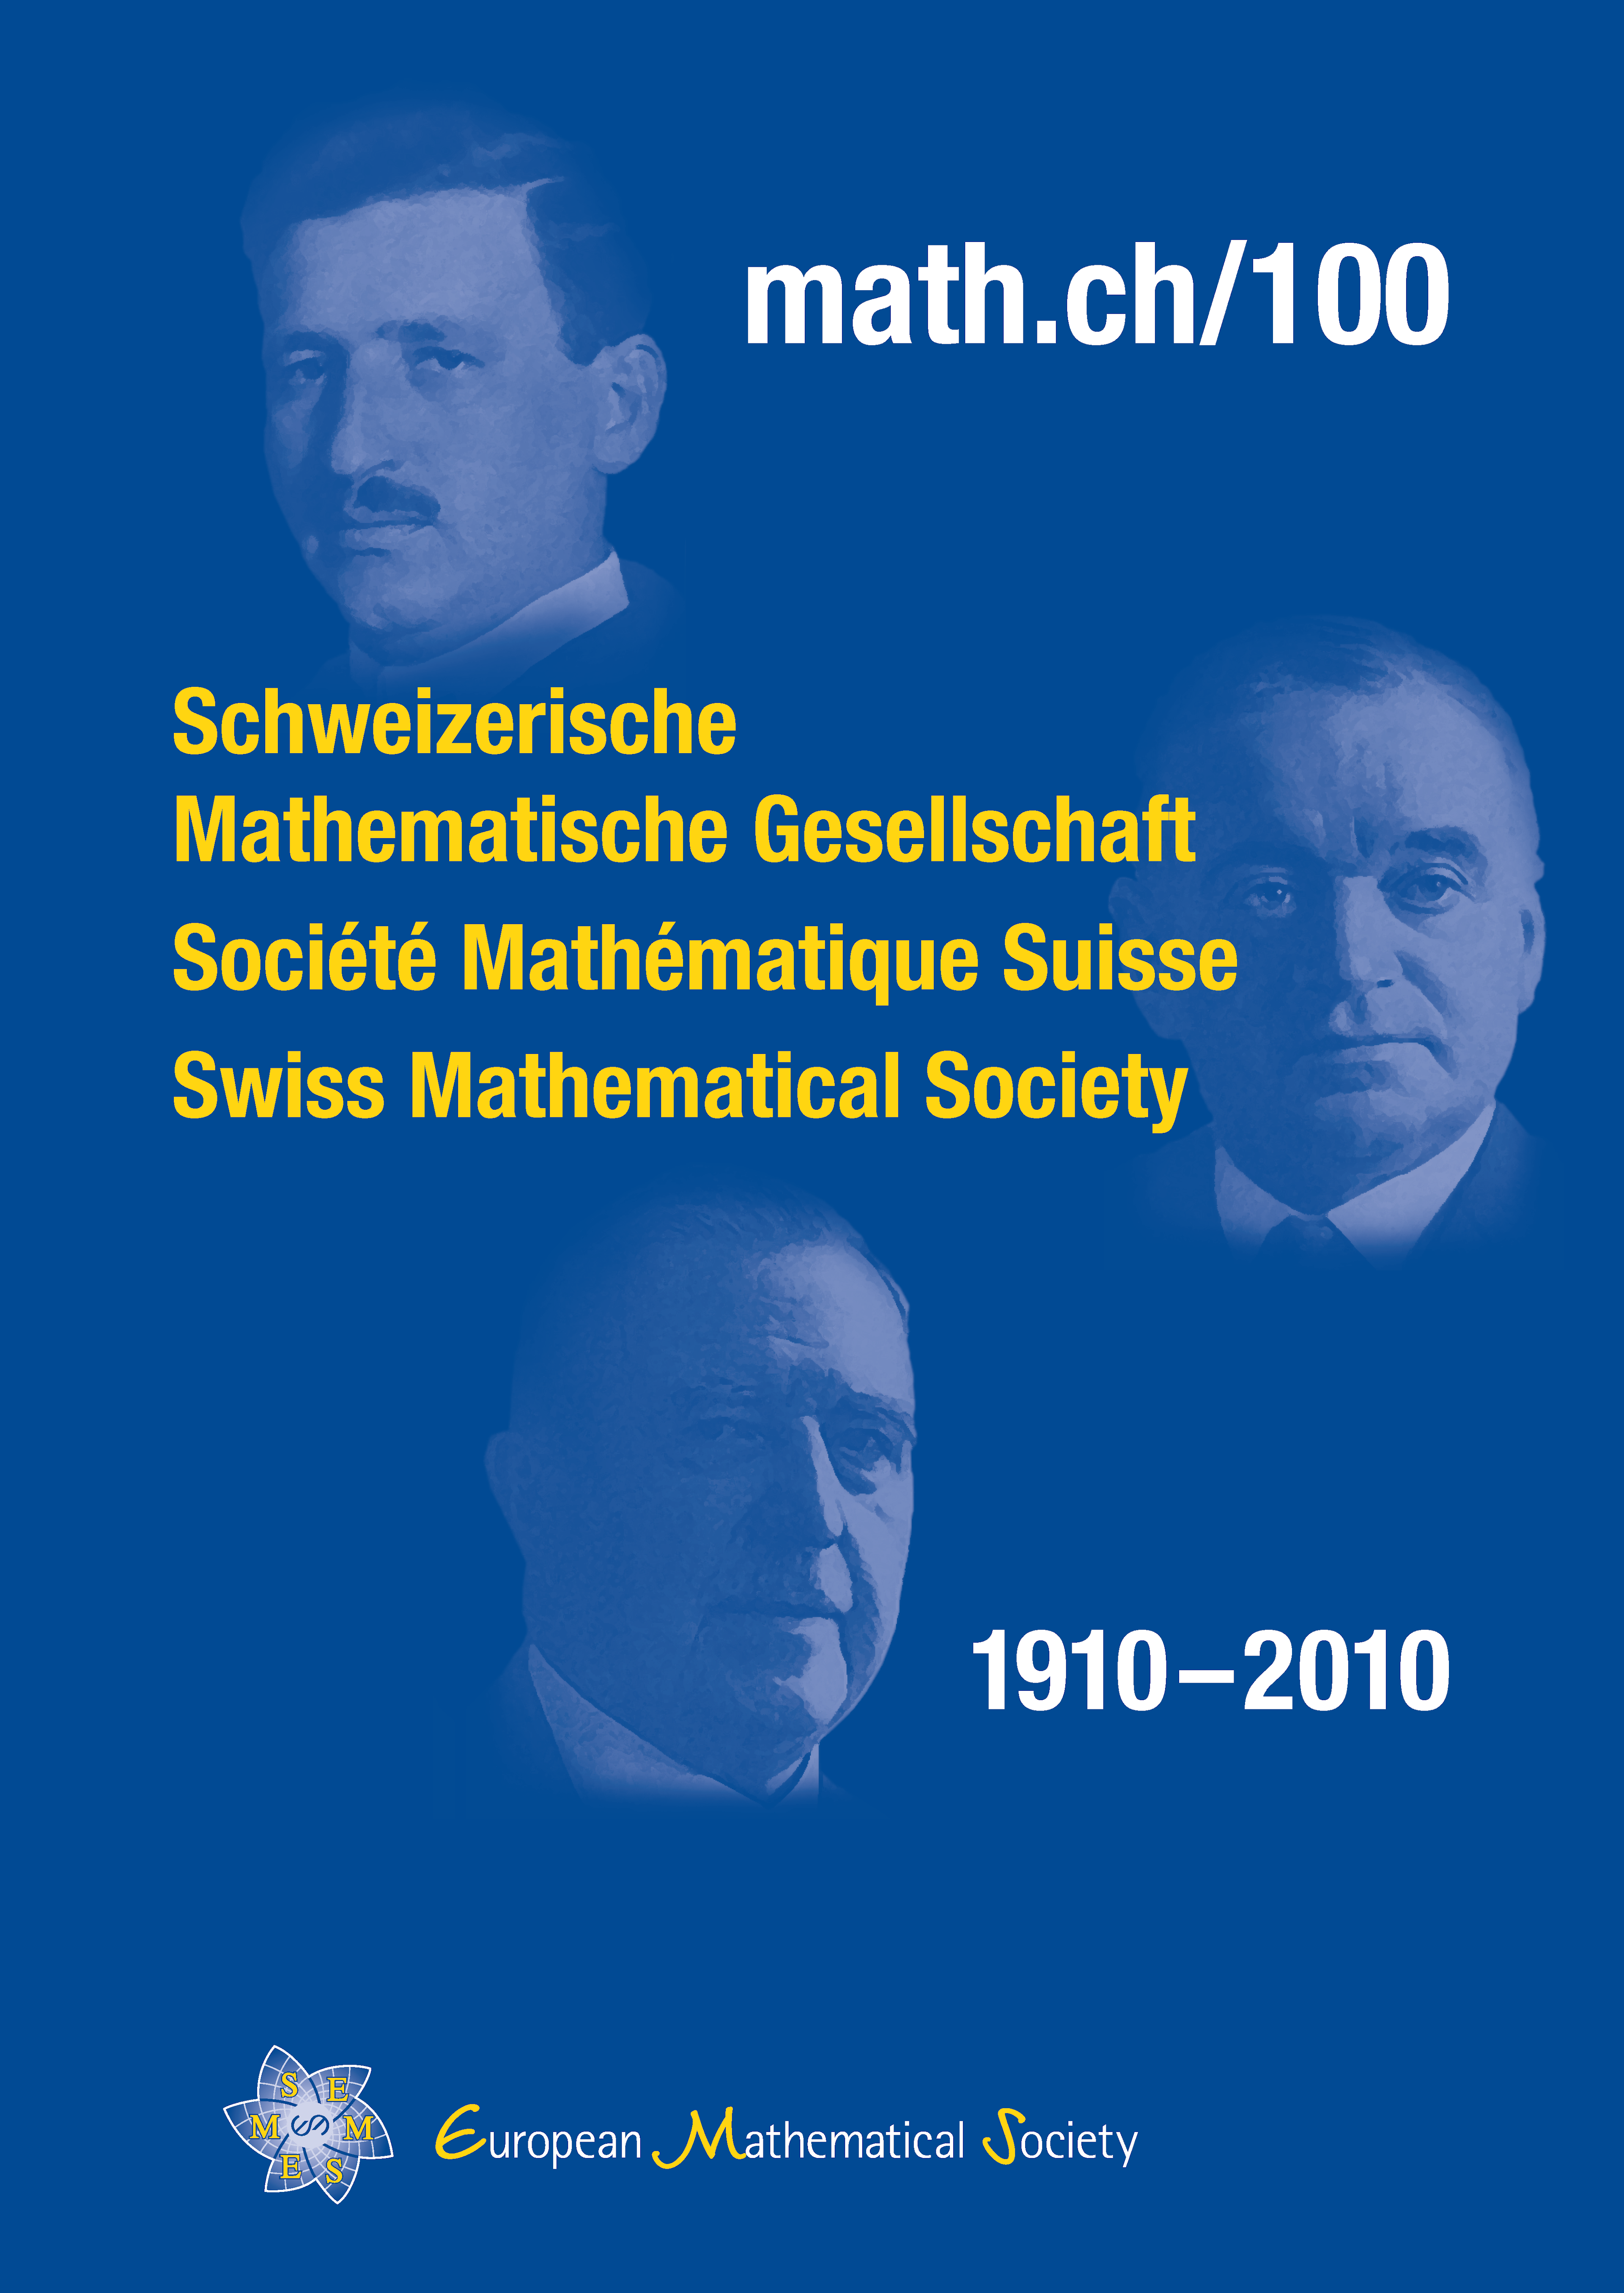 Wege von Frauen: Mathematikerinnen in der Schweiz cover